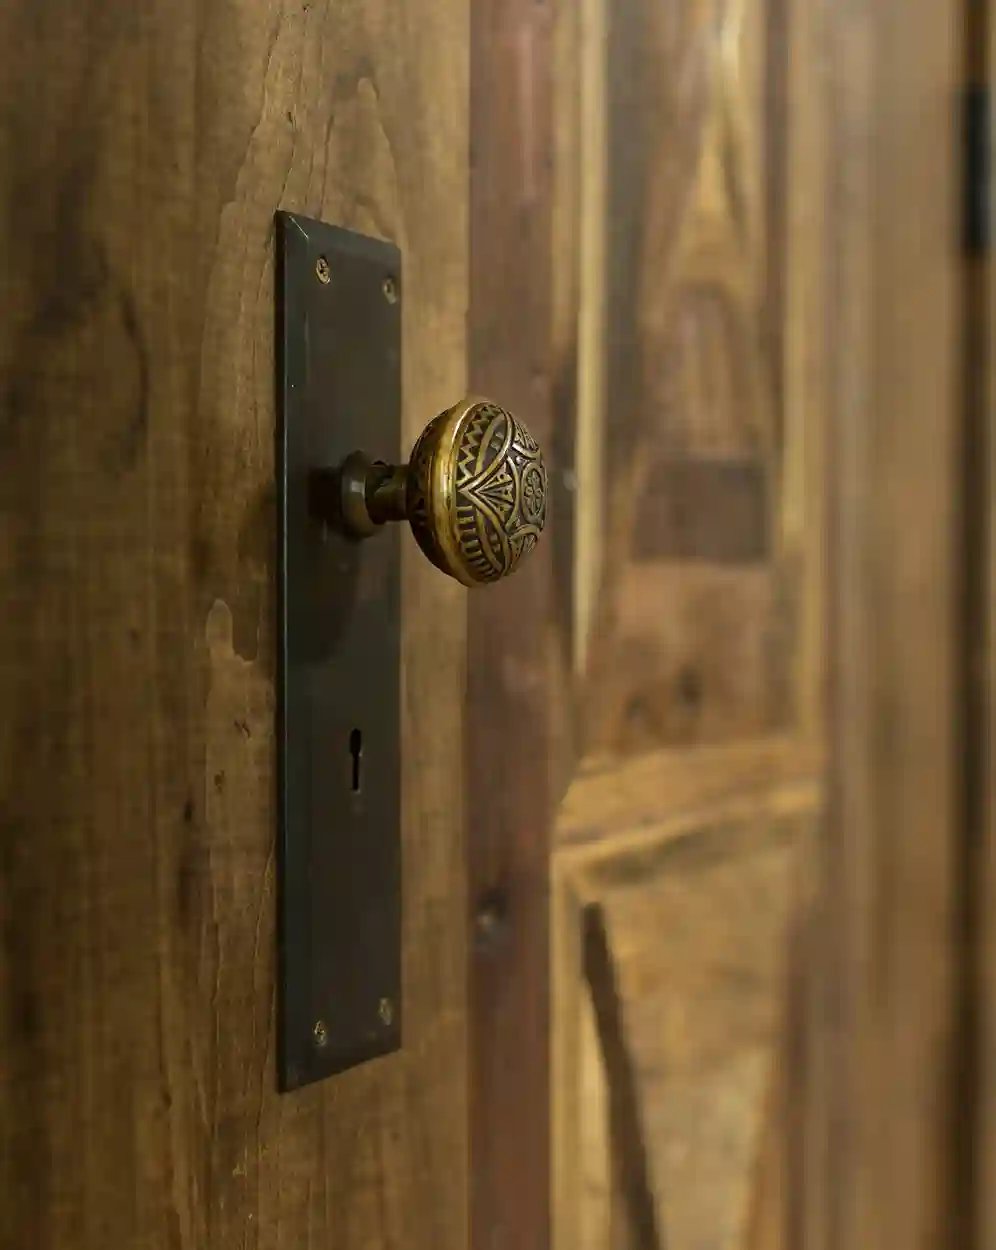 Ornate vintage door knob on a rustic wooden door